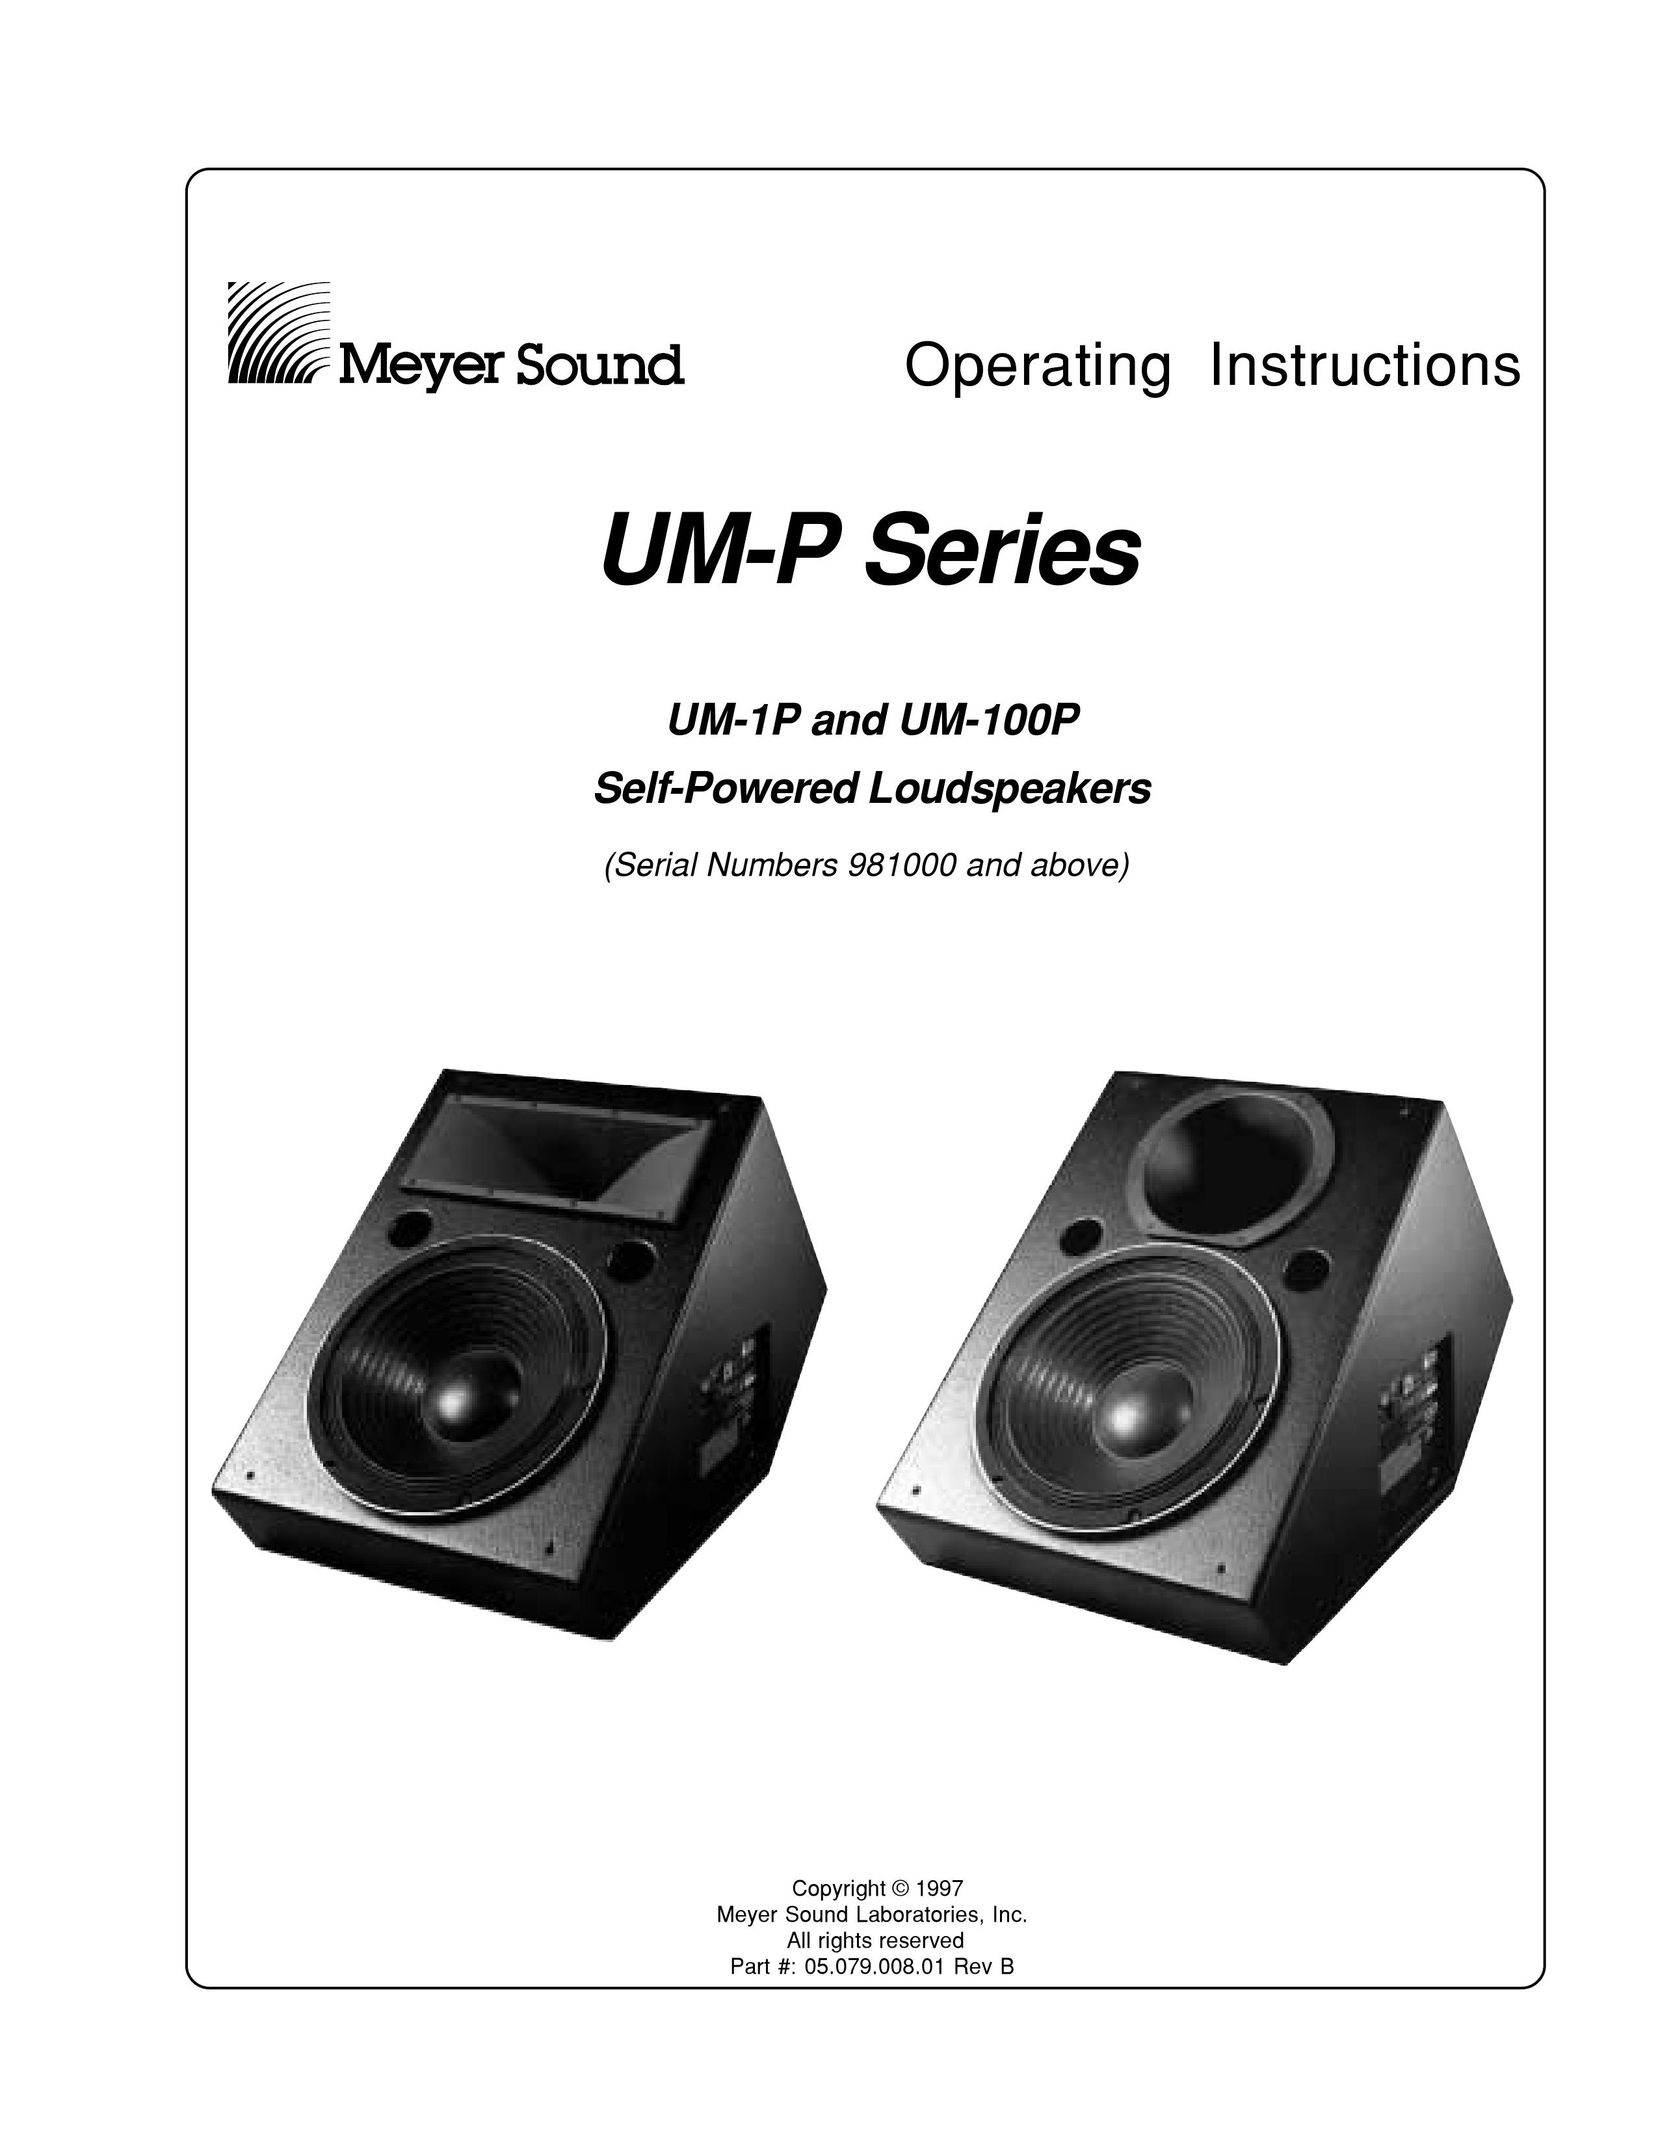 Meyer Sound UM-100P Speaker System User Manual